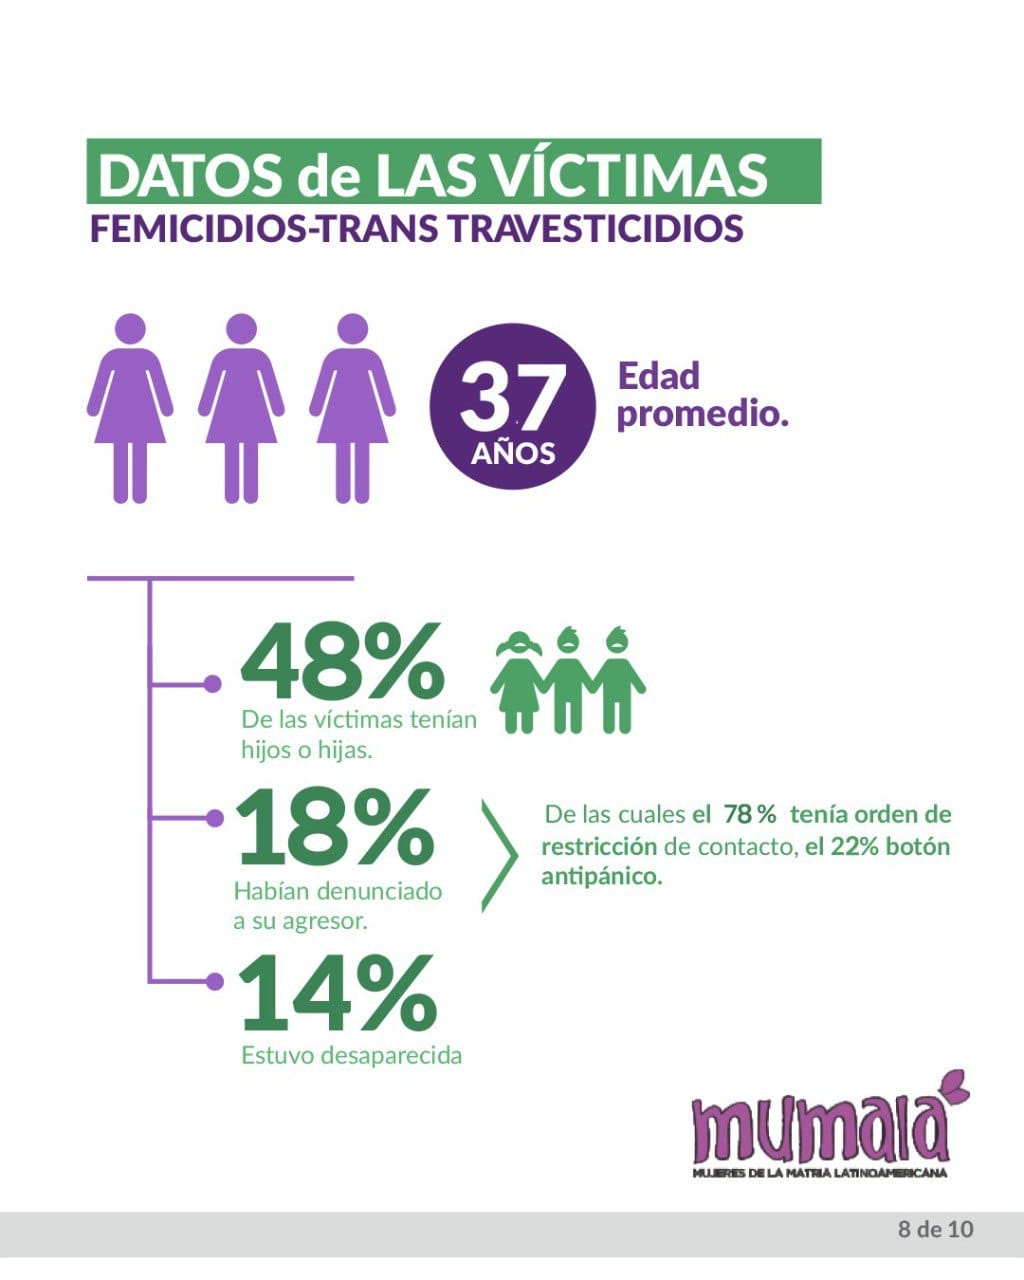 Femicidios en lo que va del año: 213 muertes violentas de mujeres, travestis - trans, en un período de una cada 20 horas imagen-4